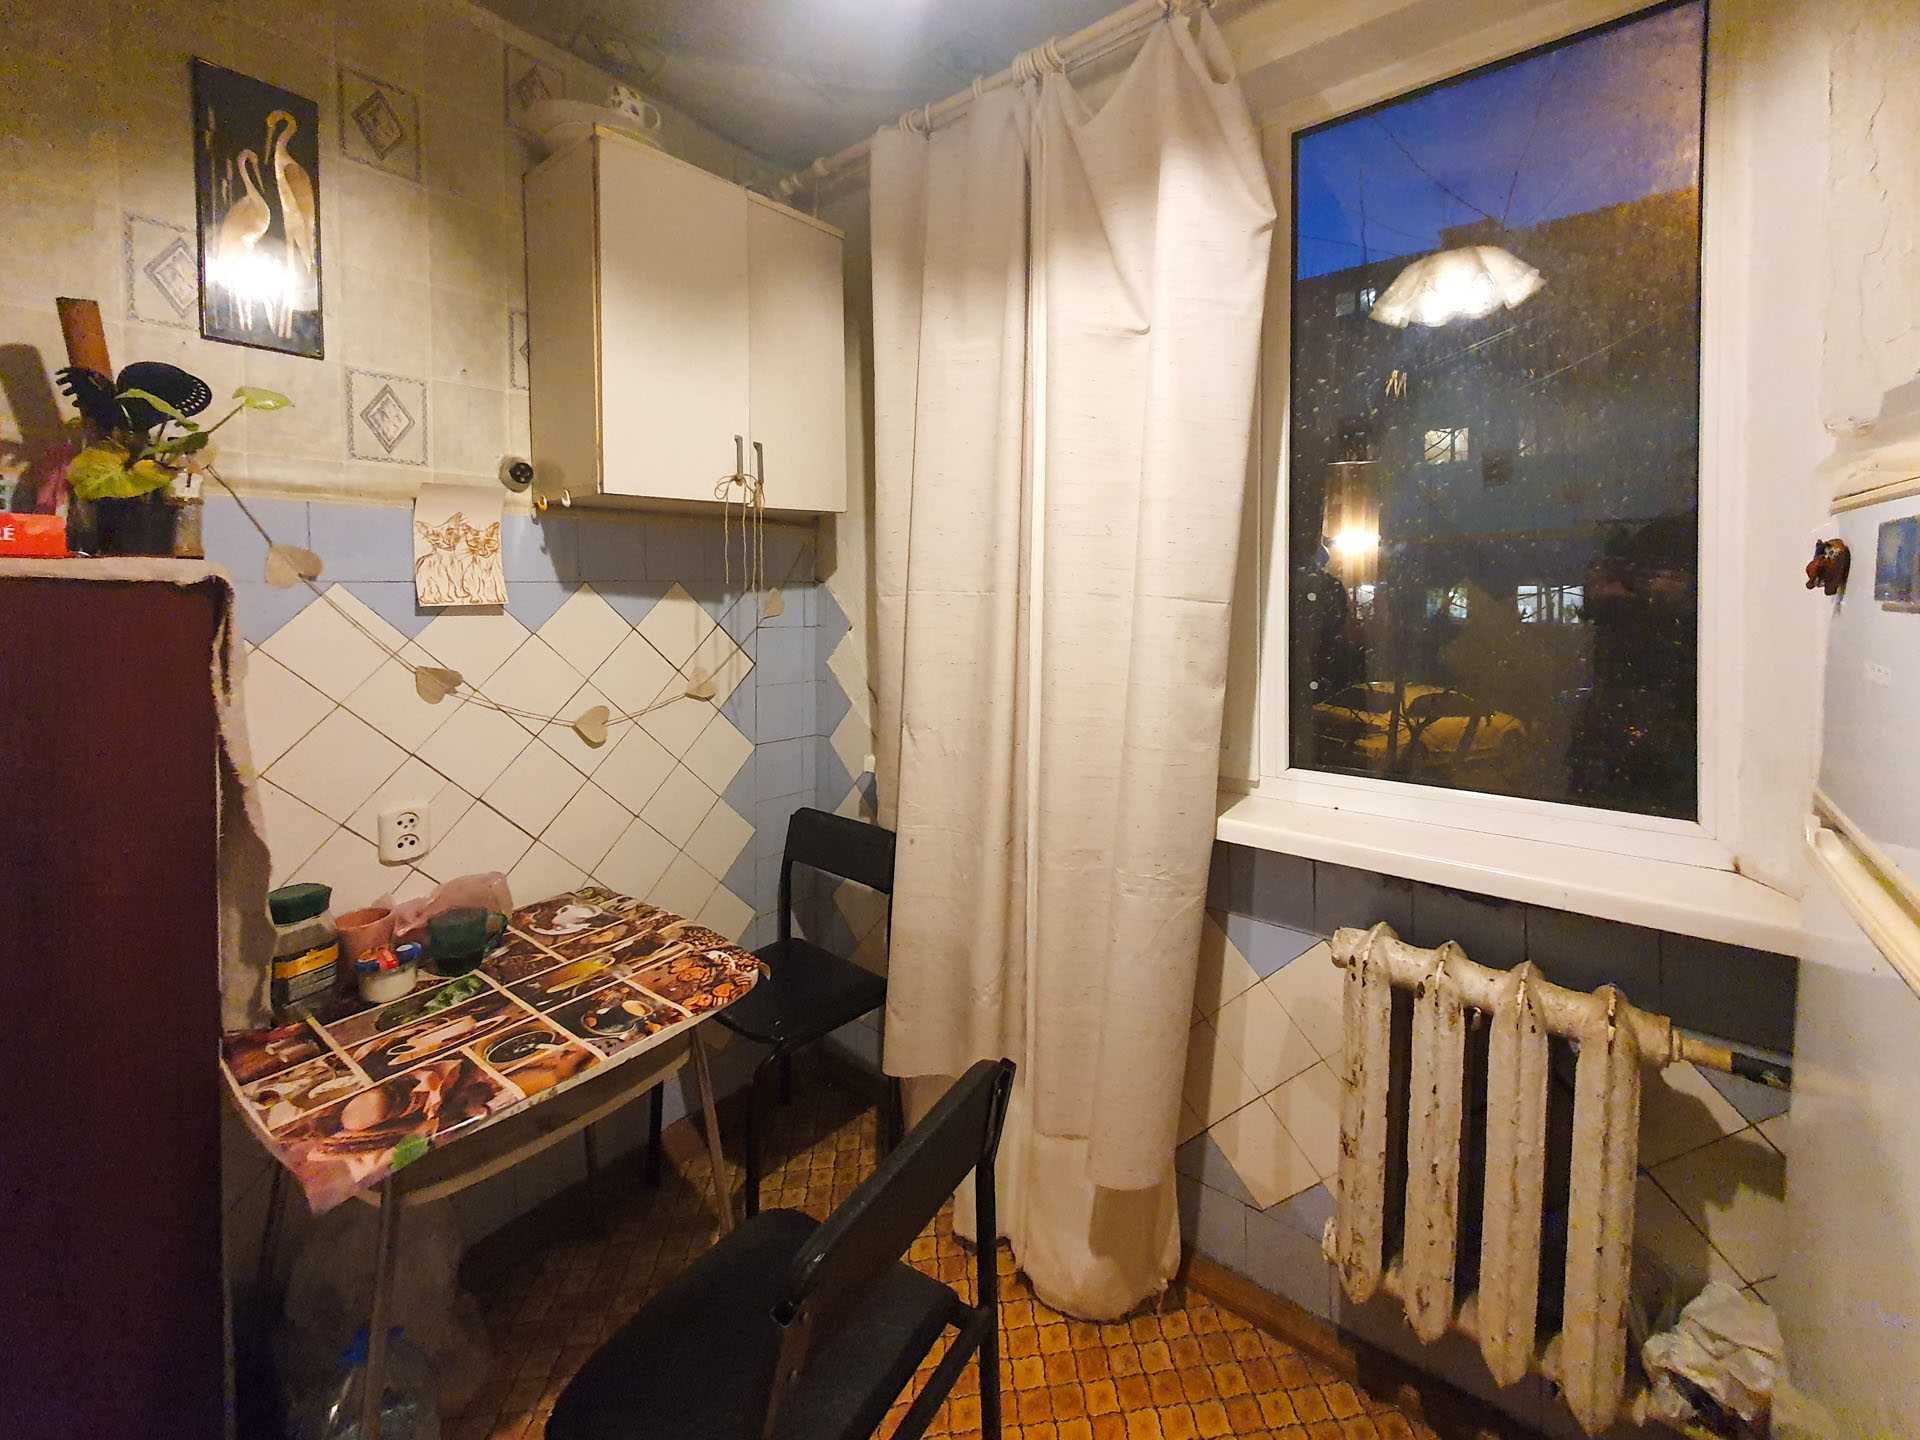 Одесская, ул. Зерновая, реальная 2 комнатная квартира возле Роста